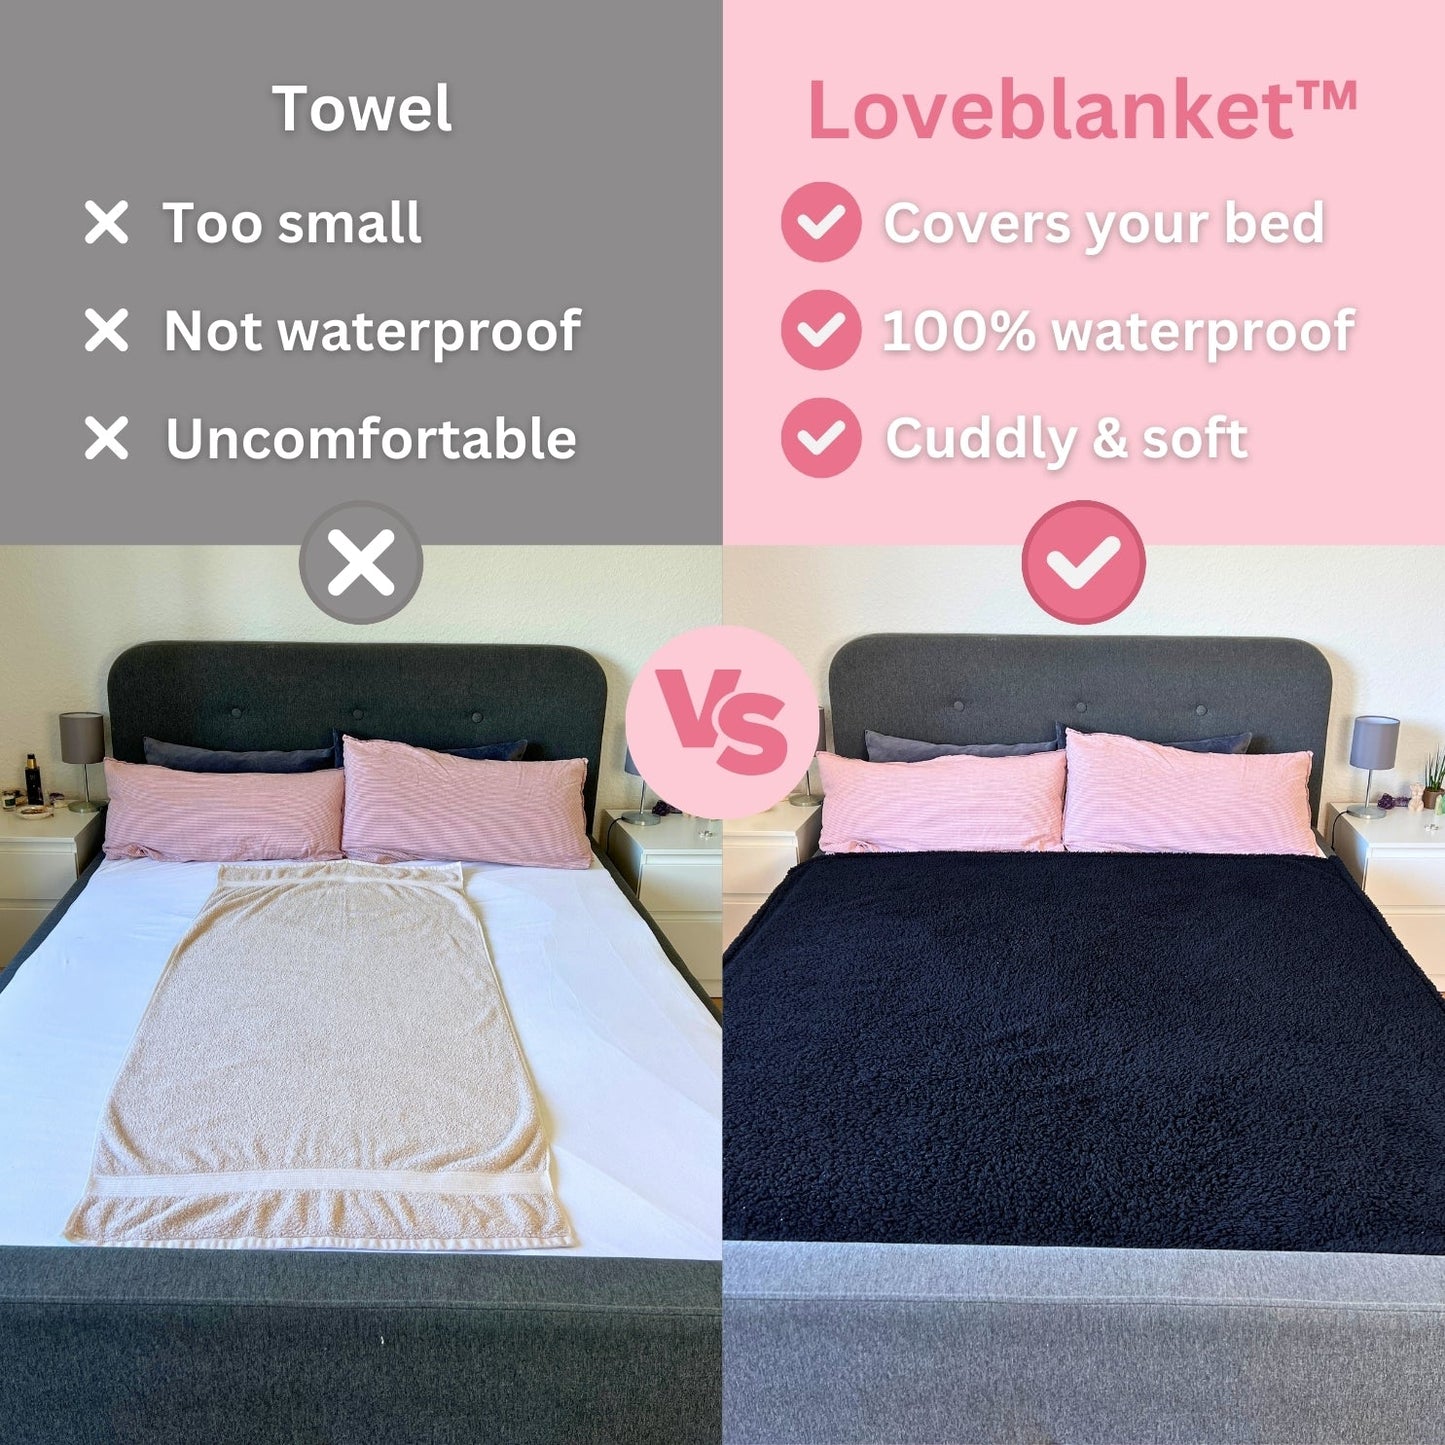 Loveblanket™ - The Waterproof Cuddle Blanket - Loveblanket